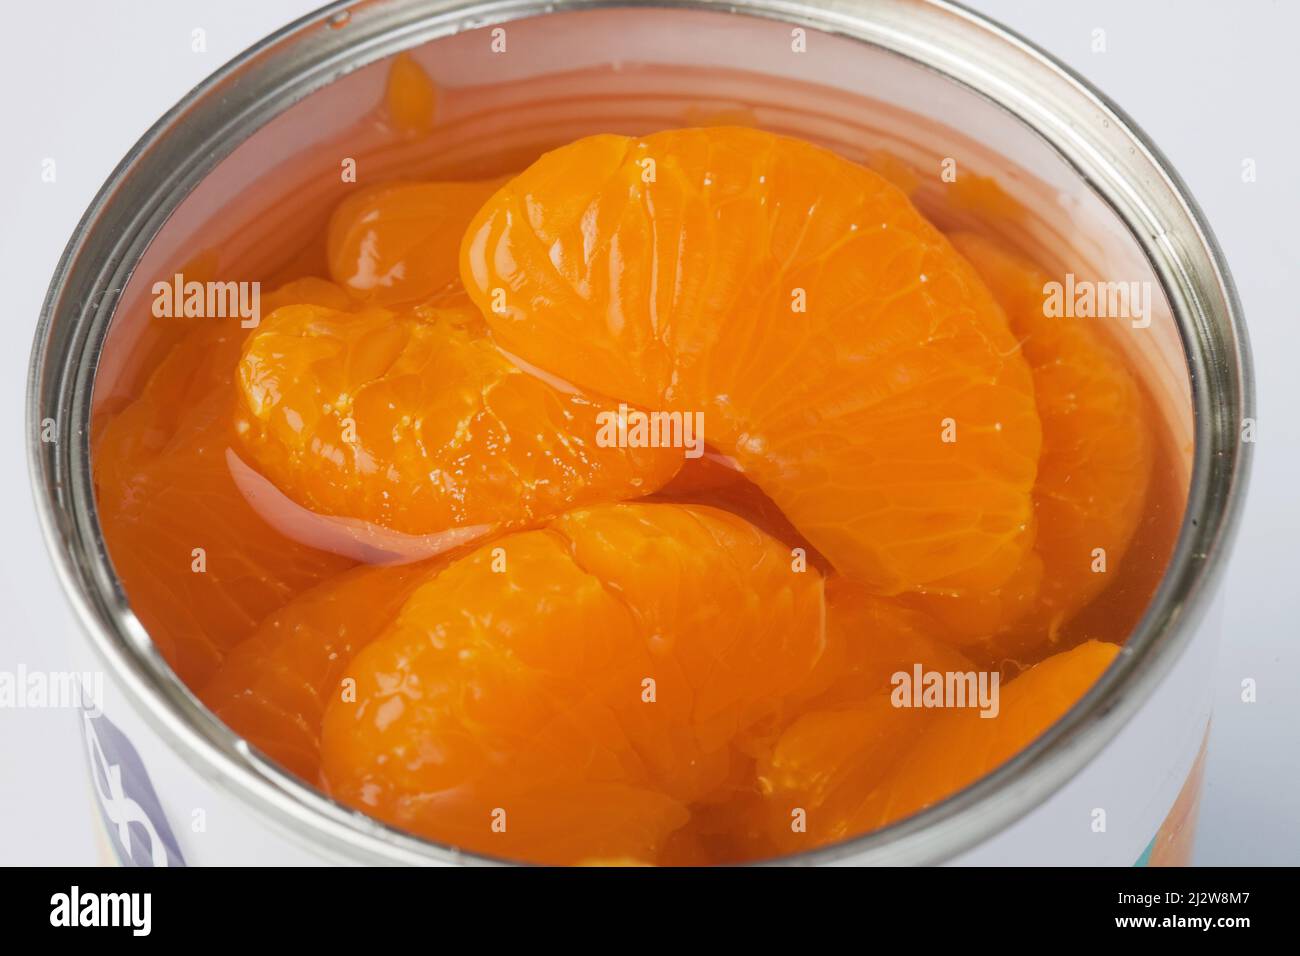 10077015 Los segmentos de mandarina enlatados se pelan para quitar la cáscara blanca antes de enlatar; de lo contrario, se vuelven amargos. Los segmentos se pelan utilizando una quimi Foto de stock